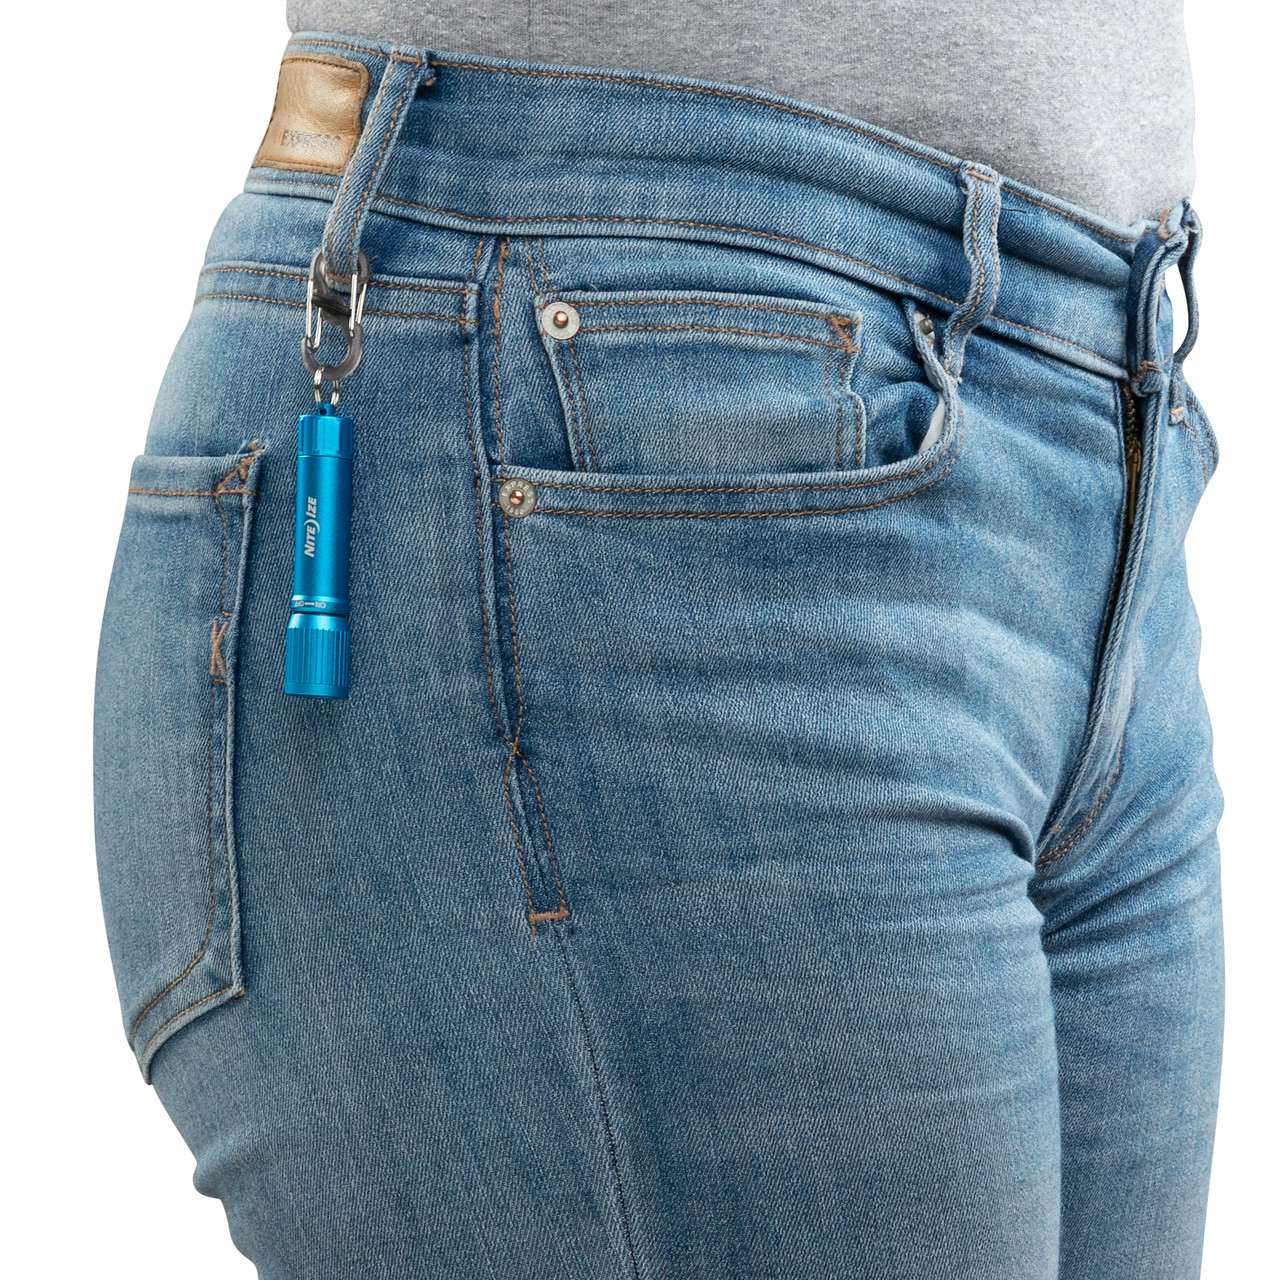 Lampe de poche pour porte-clés Radiant 100 Bleu